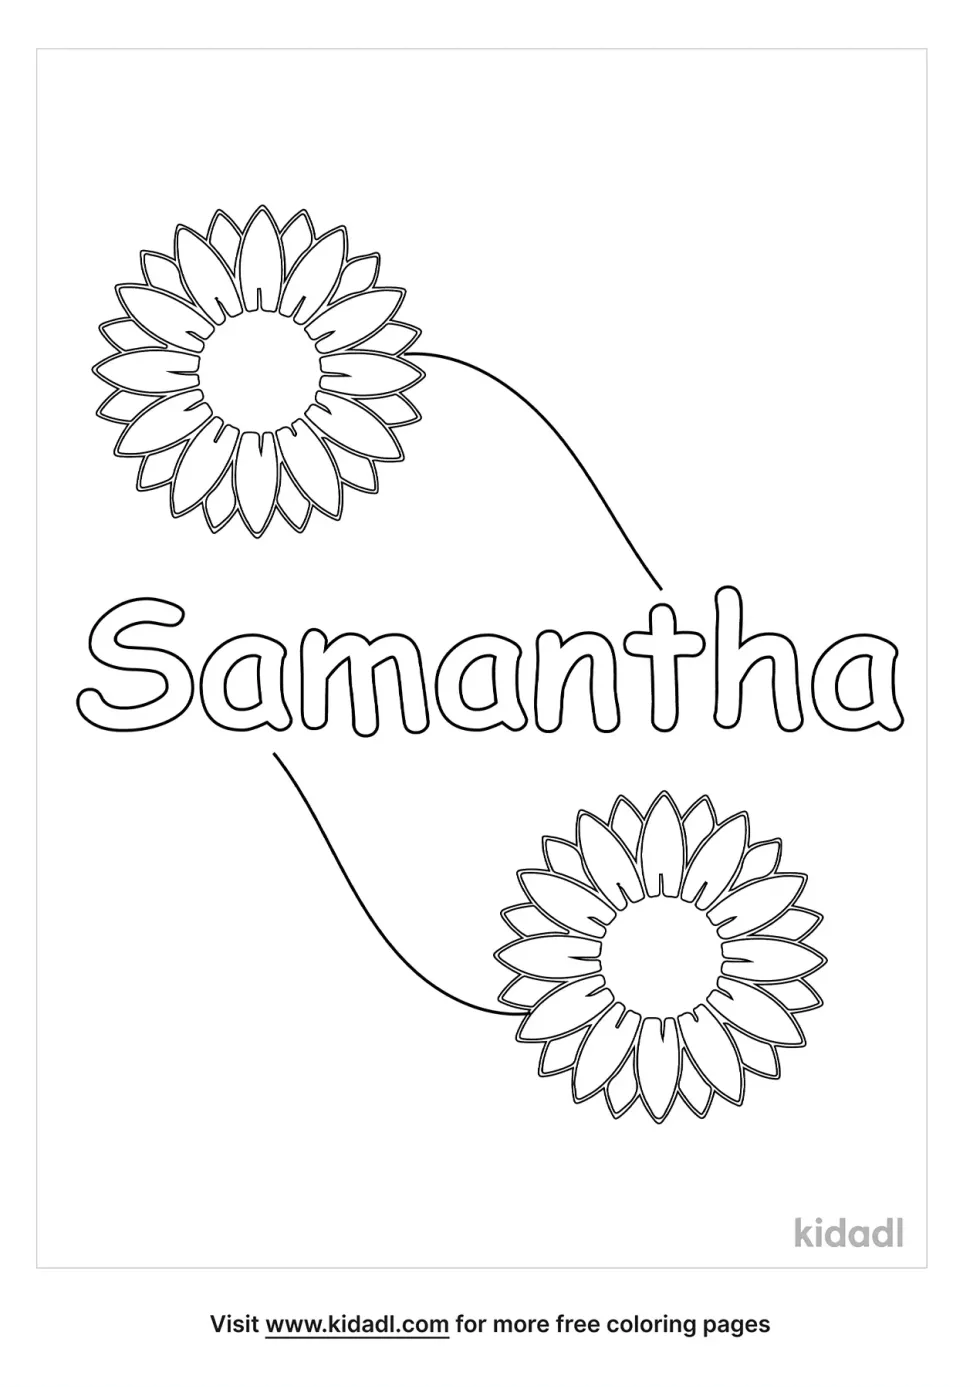 Samantha Coloring Page